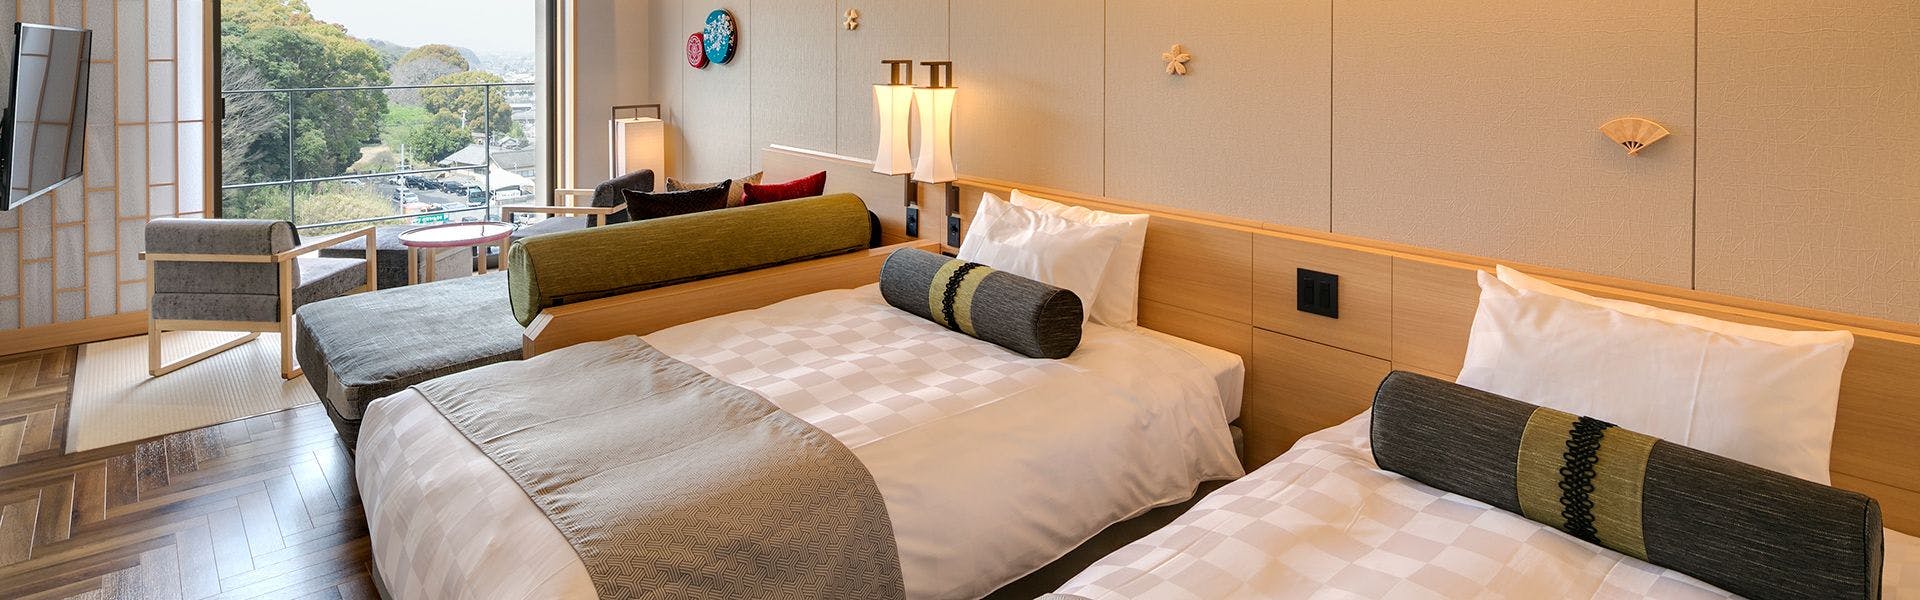 香川の家族旅行におすすめのホテル 旅館 選 宿泊予約は 一休 Com